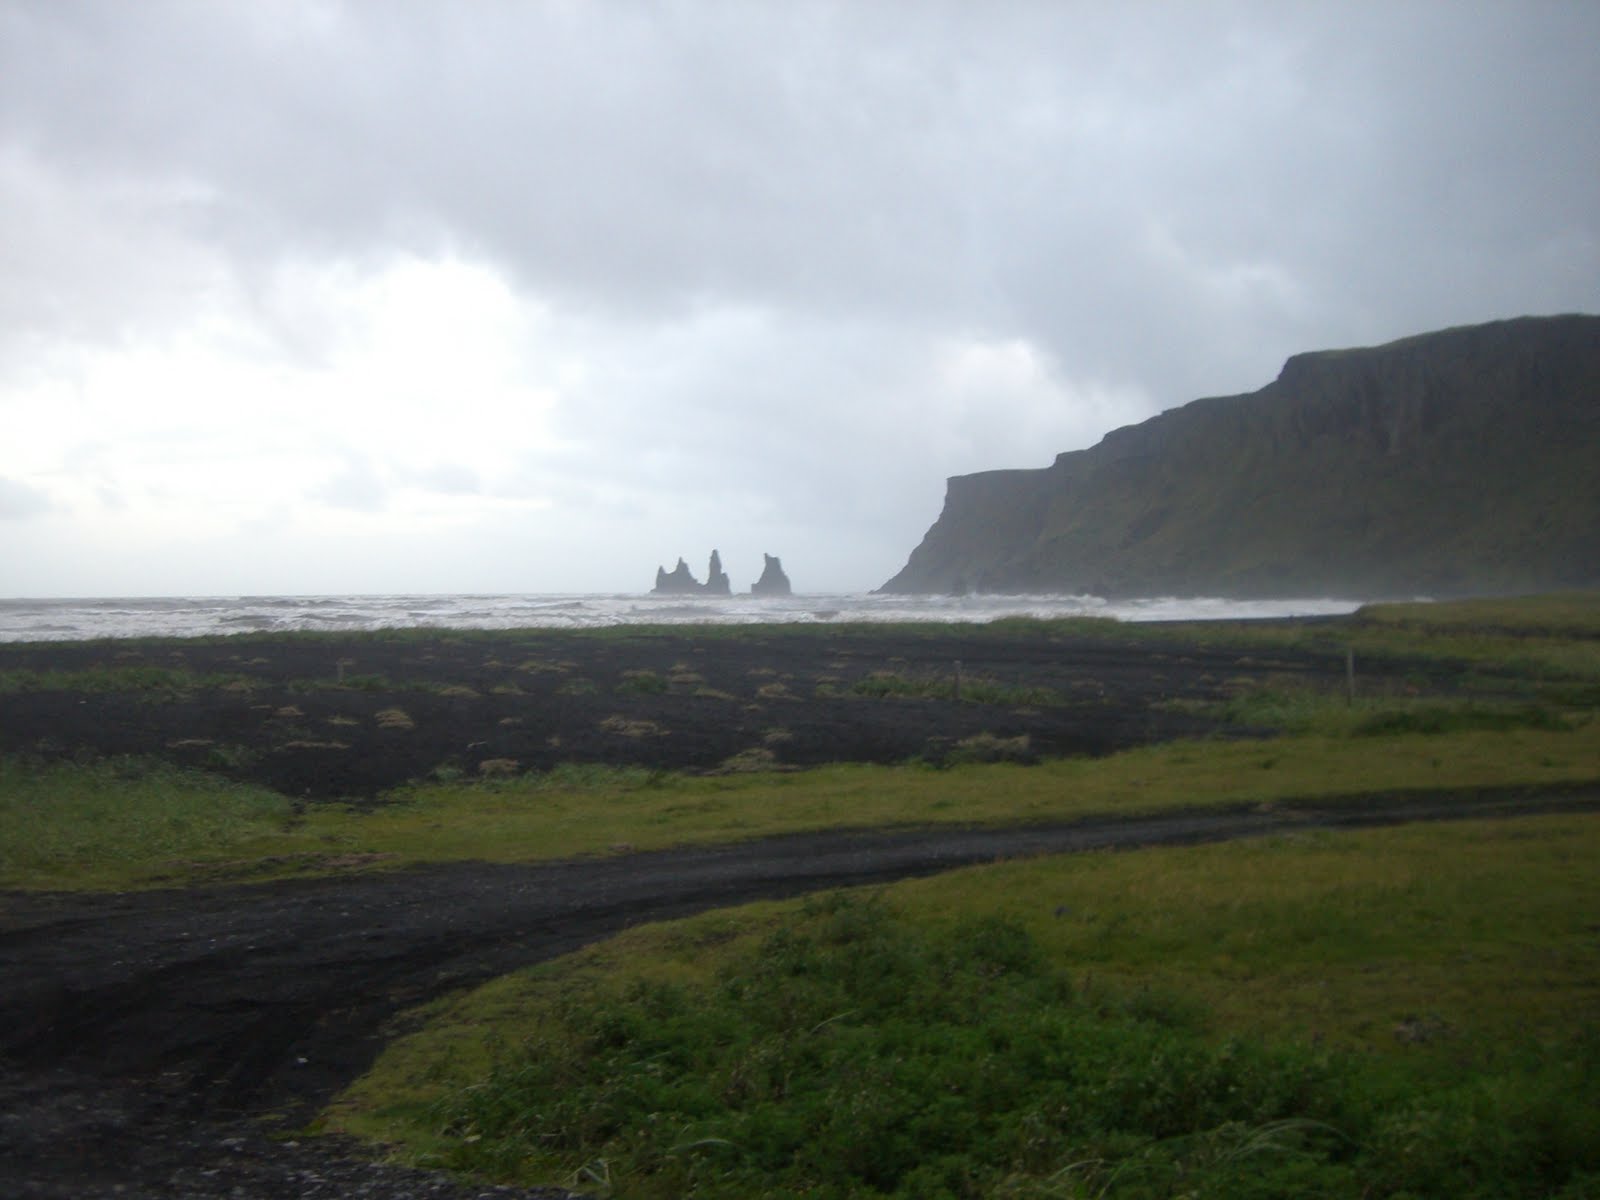 ISLANDIA  en tienda de campaña - Blogs de Islandia - ISLANDIA  el palpitar del planeta (4)